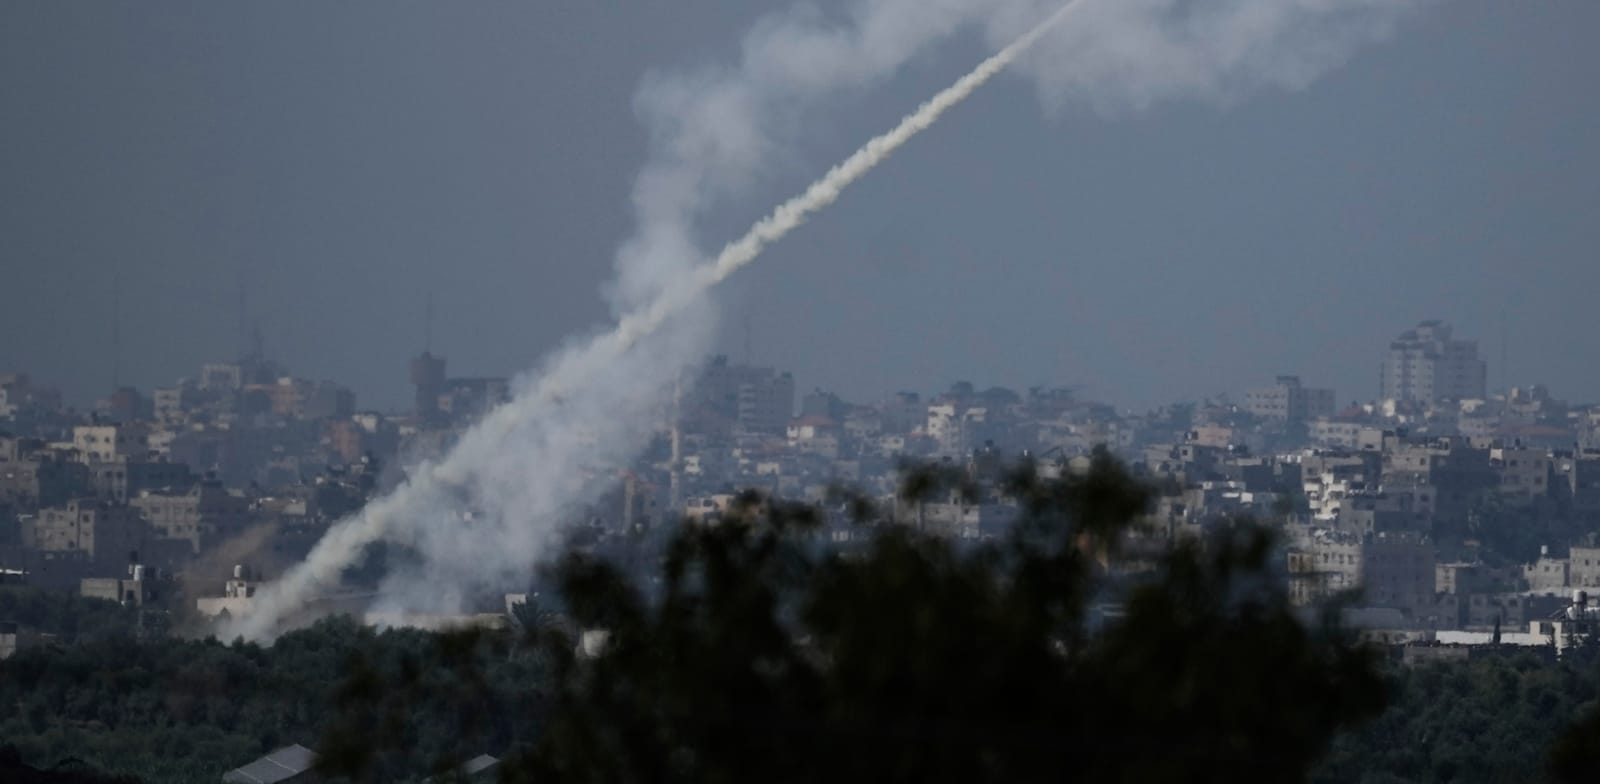 שיגור רקטה מעזה לעבר ישראל / צילום: ap, Leo Correa